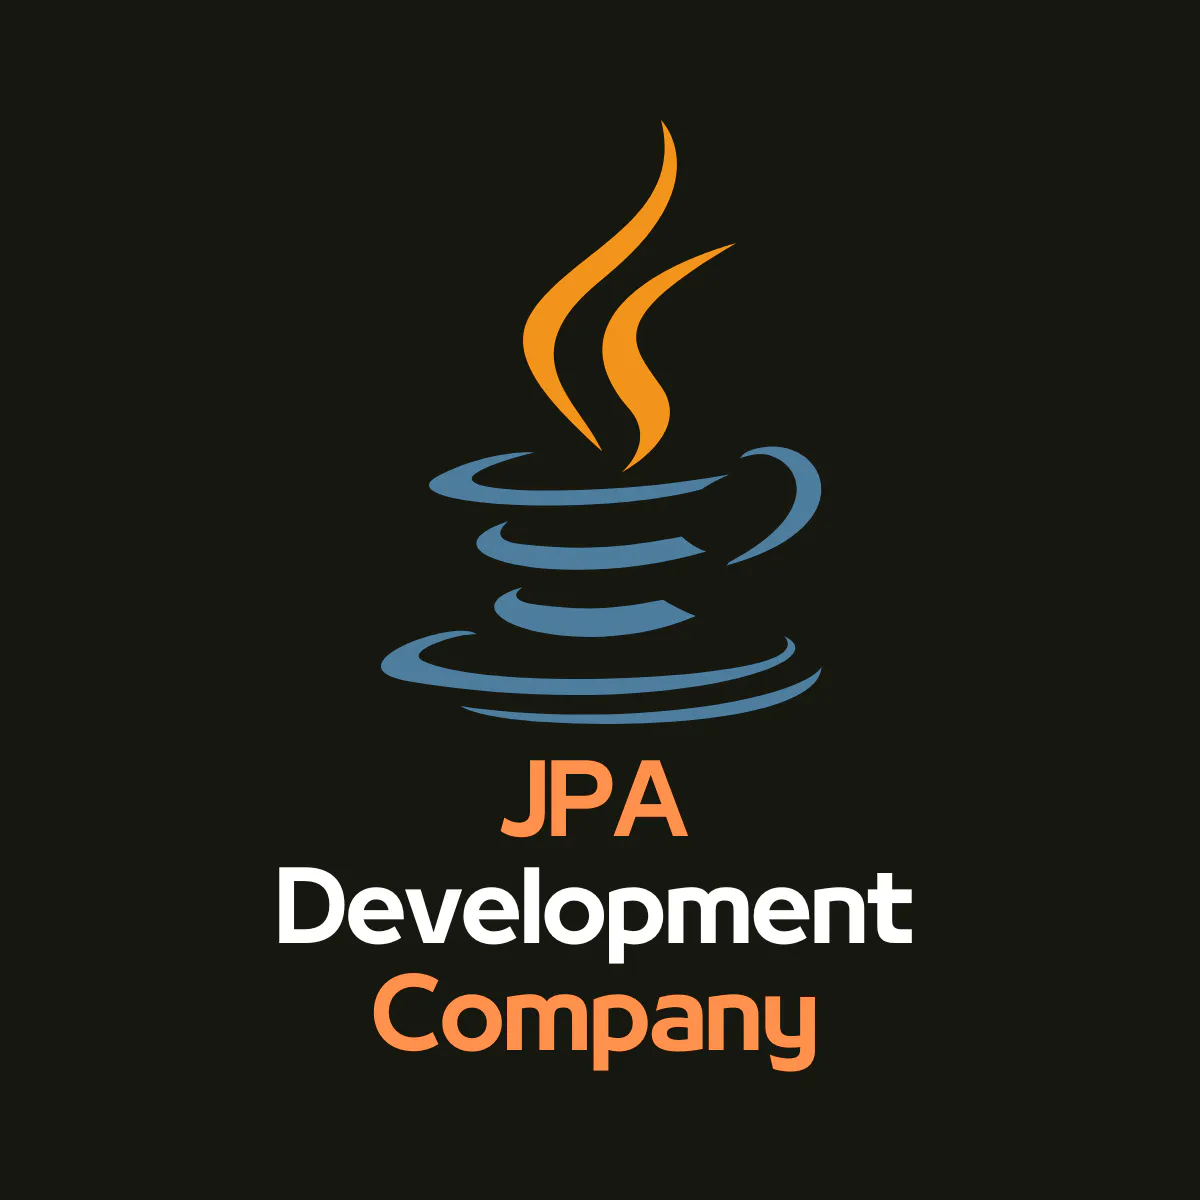 JPA Development